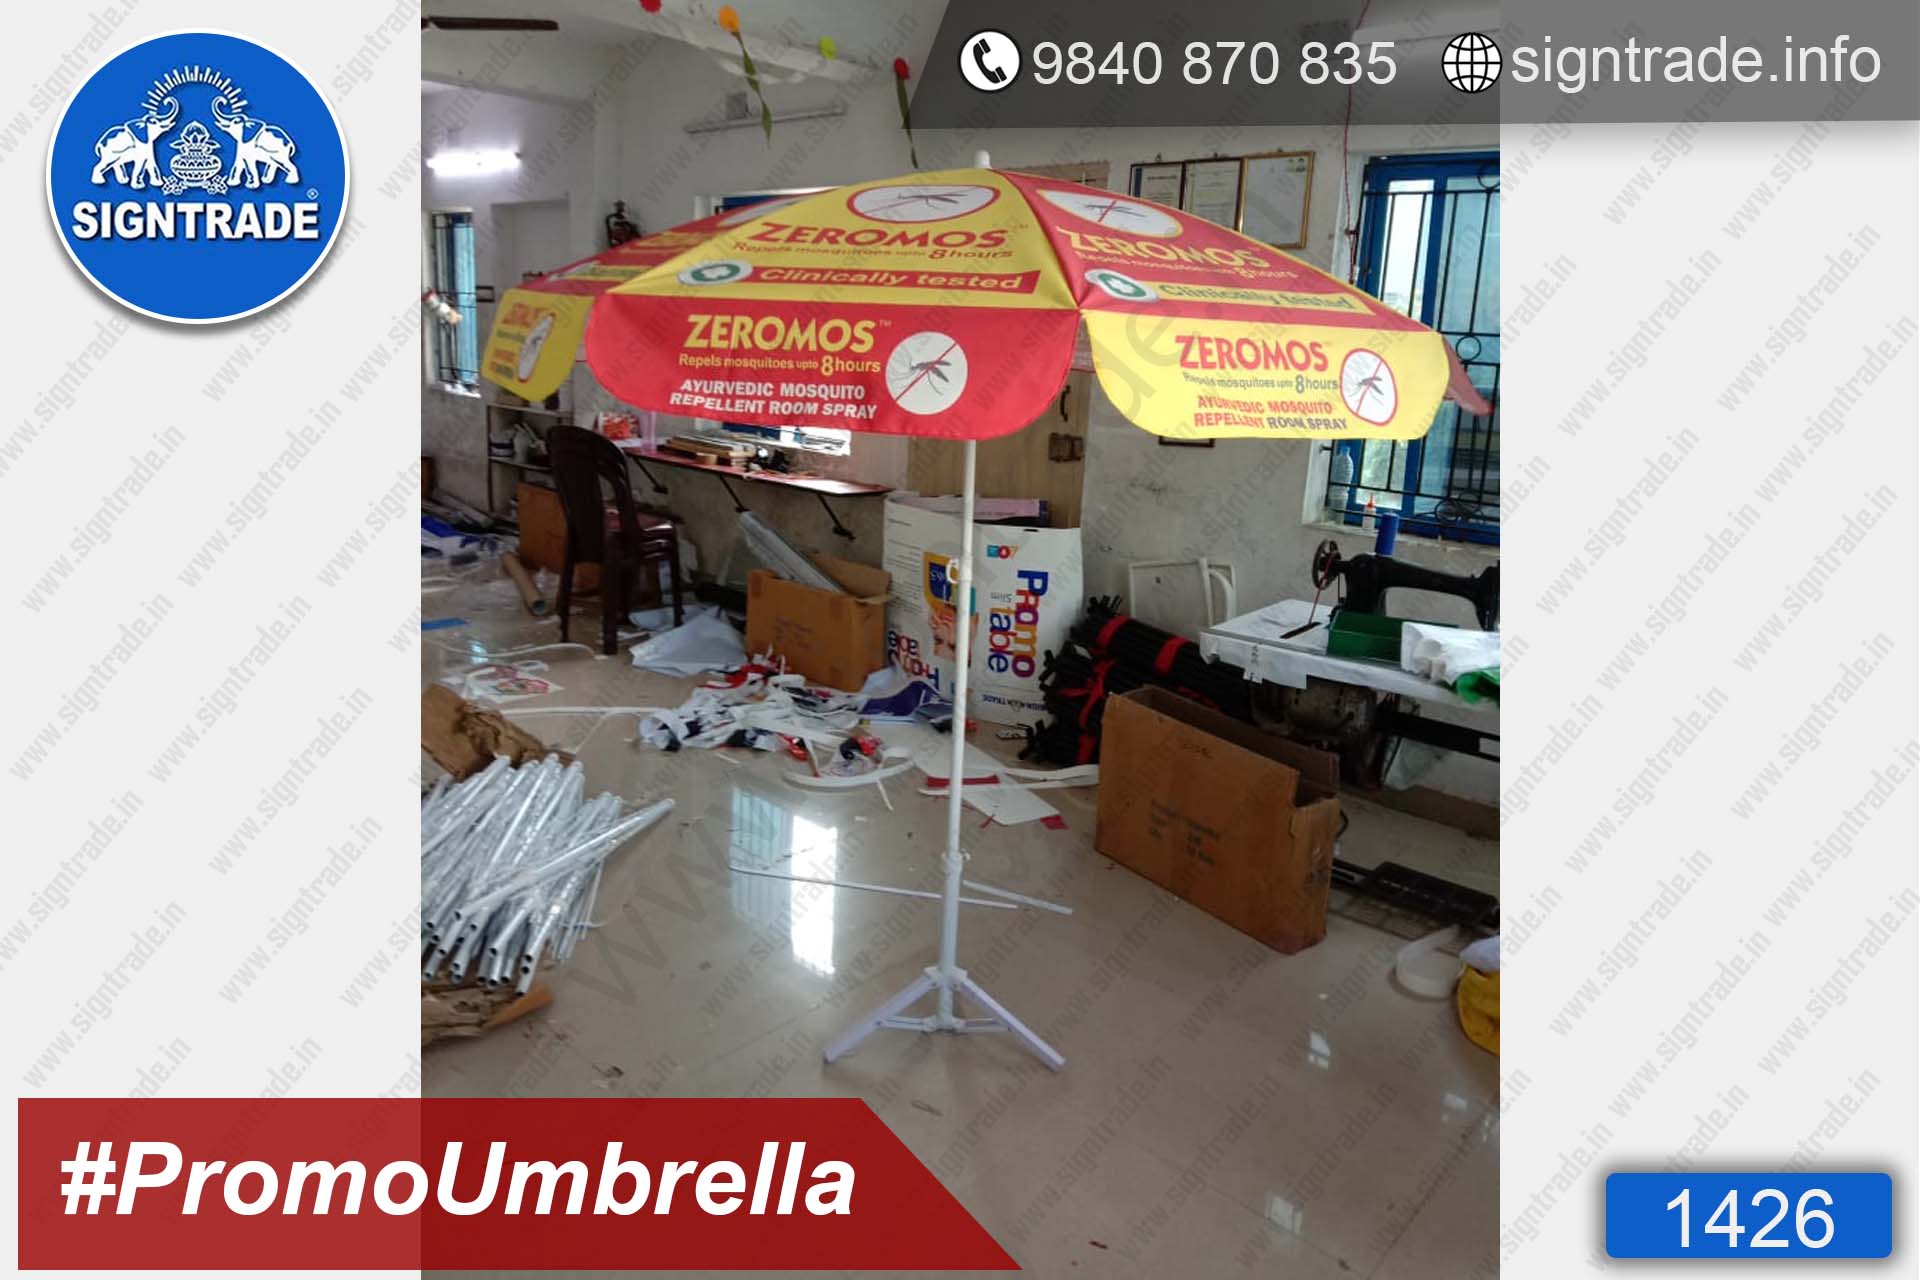 Zeromos Natural Mosquito Repellent Spray - 1426, Promotional Umbrella, Umbrella, Promo Umbrella, Advertising Umbrella, Big Umbrella, Large Umbrella, Printed Umbrella